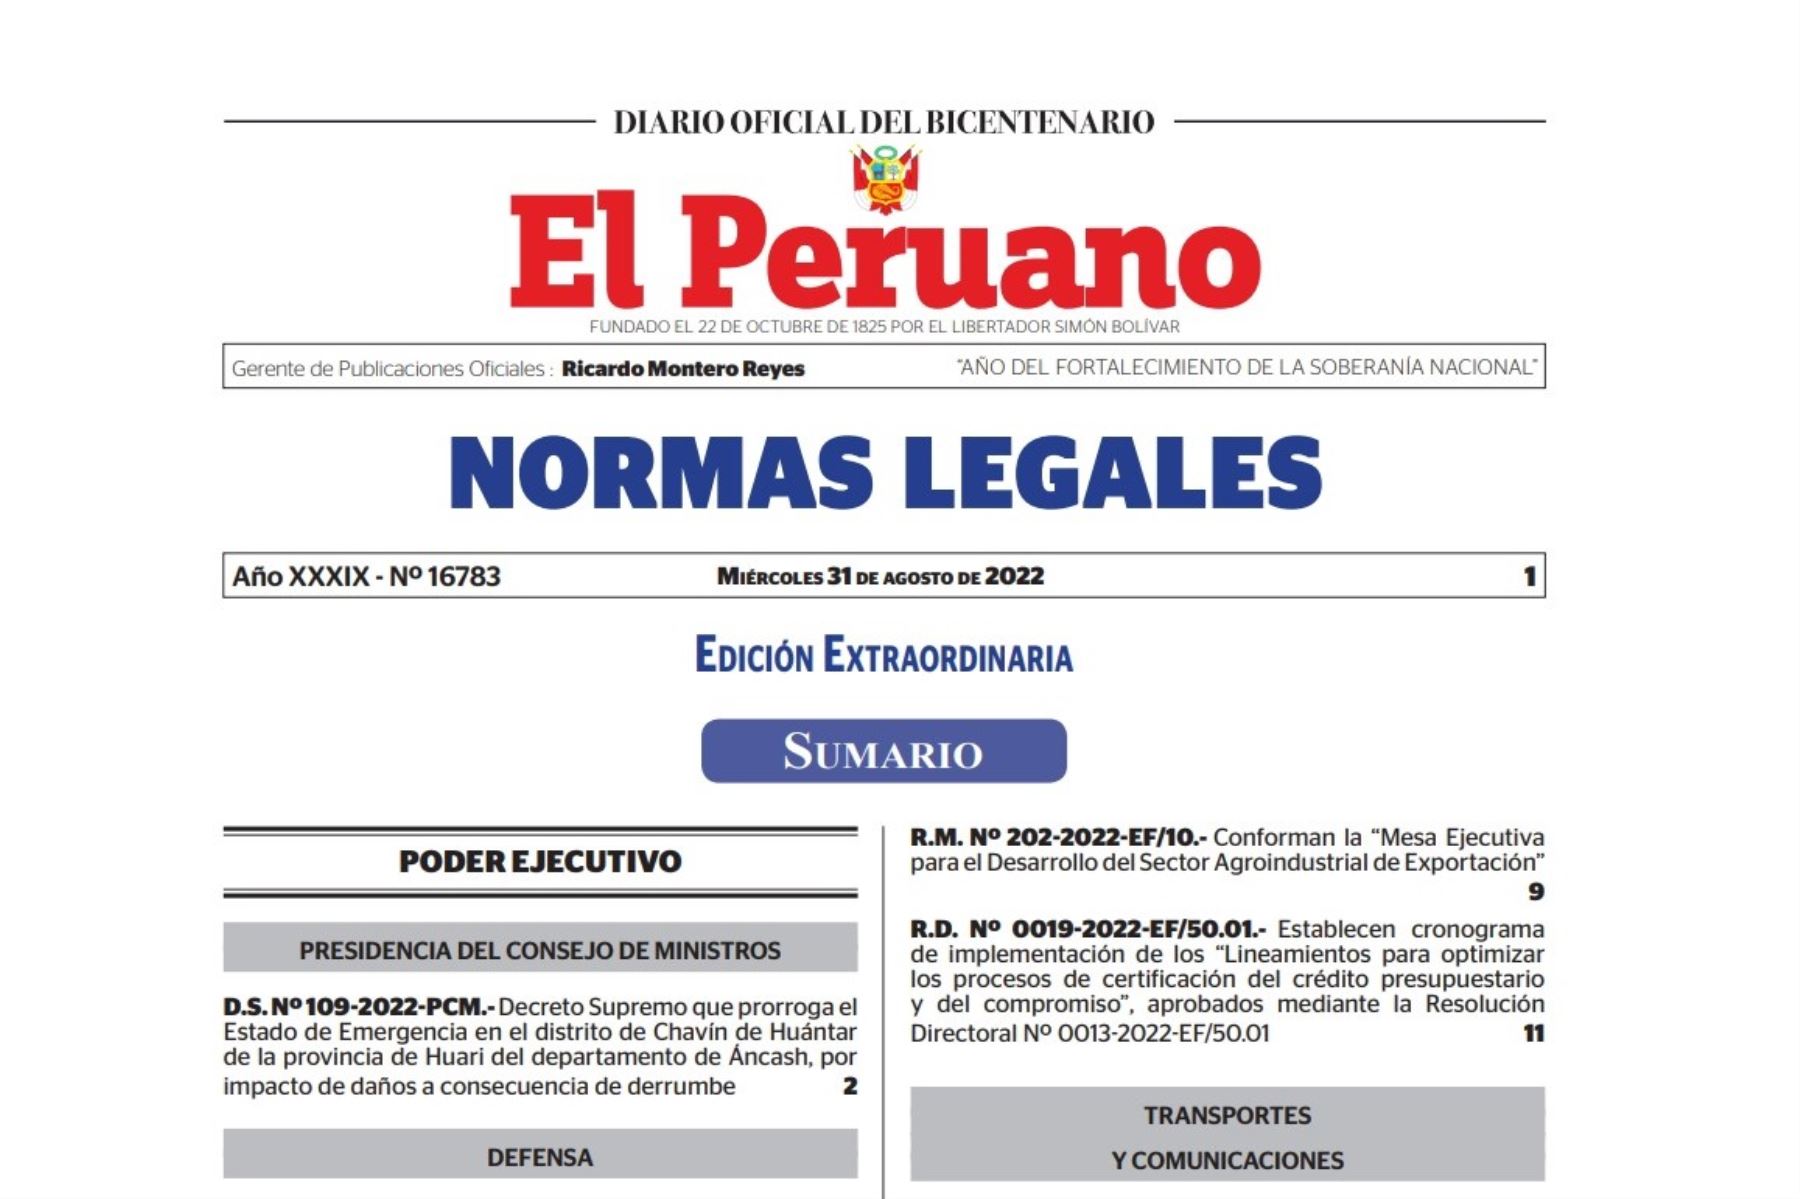 Normas Legales del Diario Oficial El Peruano.